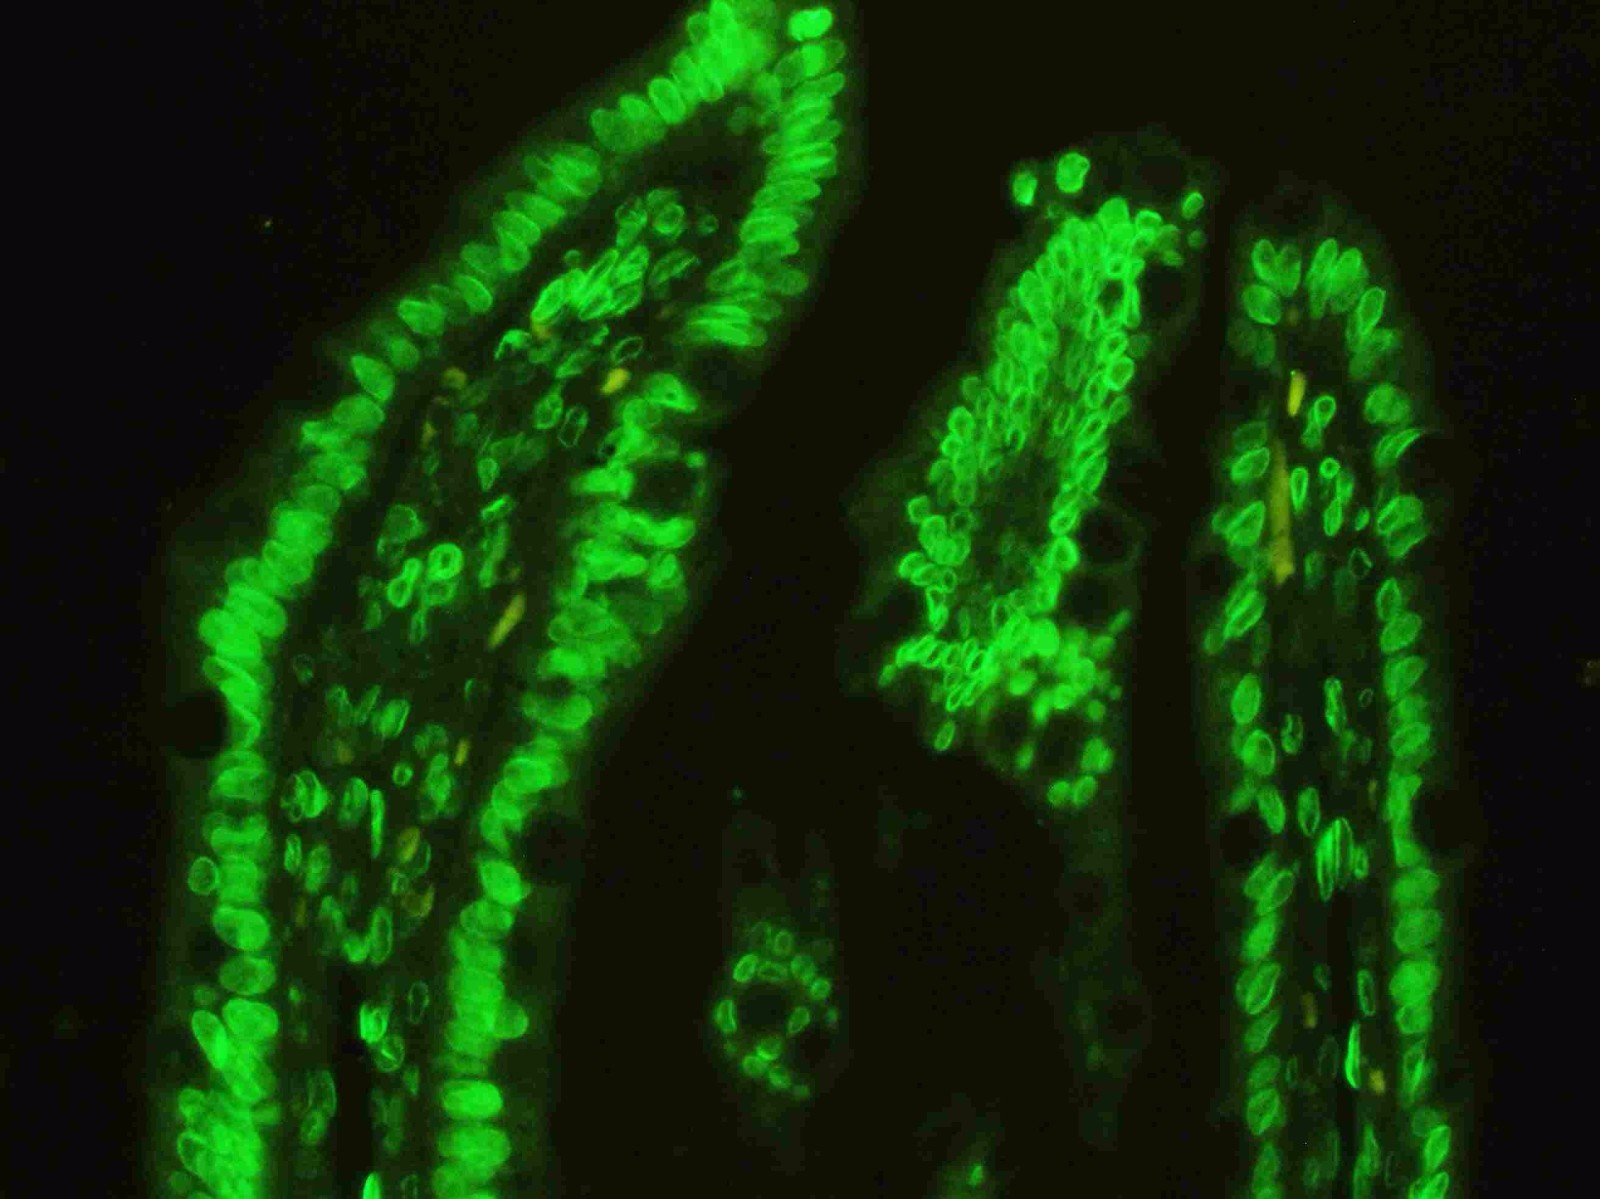 图 1. 使用抗 LMNA 抗体 (PB9280) 在大鼠肠组织石蜡包埋切片中检测到的 IF 分析。 组织切片使用 DyLight 488 Conjugated Avidin 二抗（绿色）（Catalog?#?BA1128）染色，并用 DAPI（蓝色）复染。